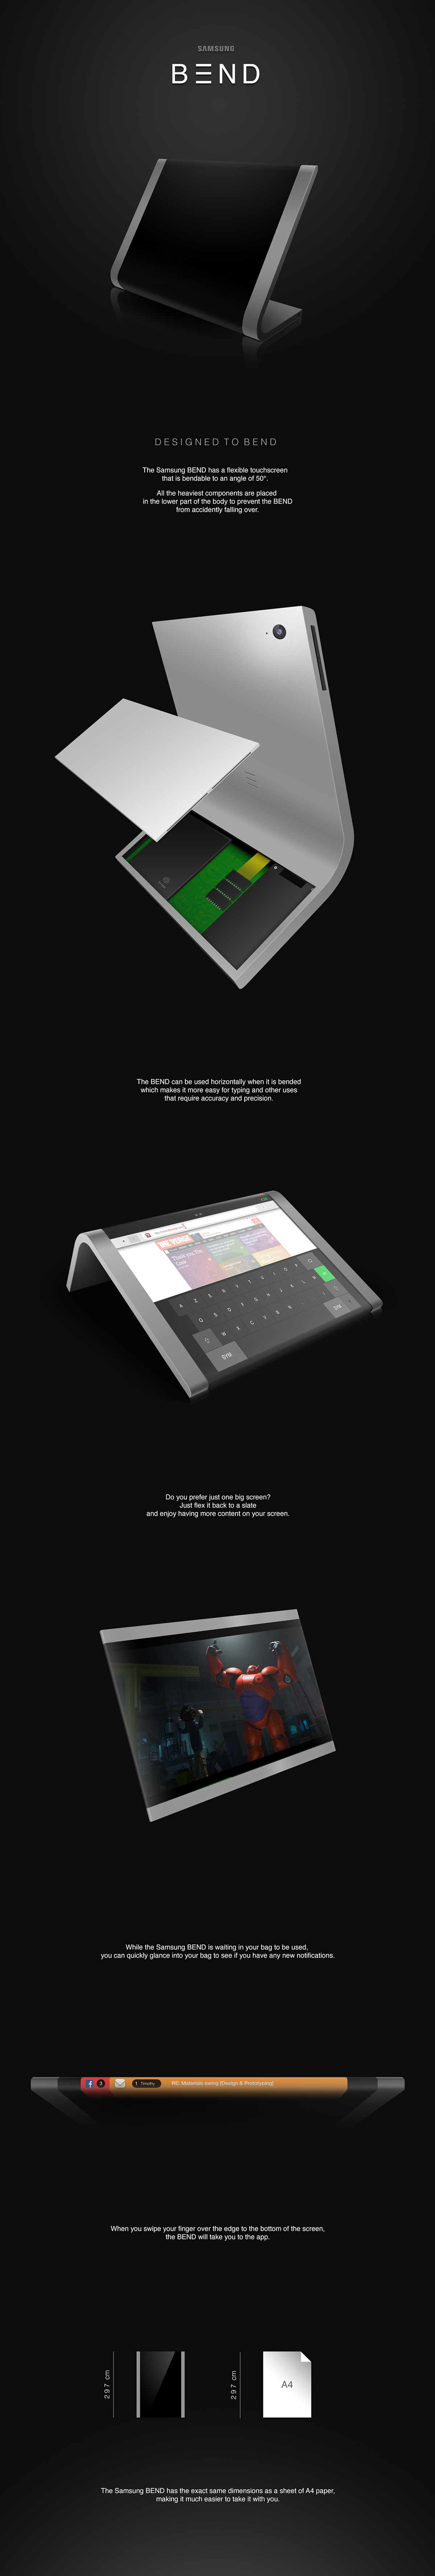 Samsung bend flexible touchscreen student UI user interface